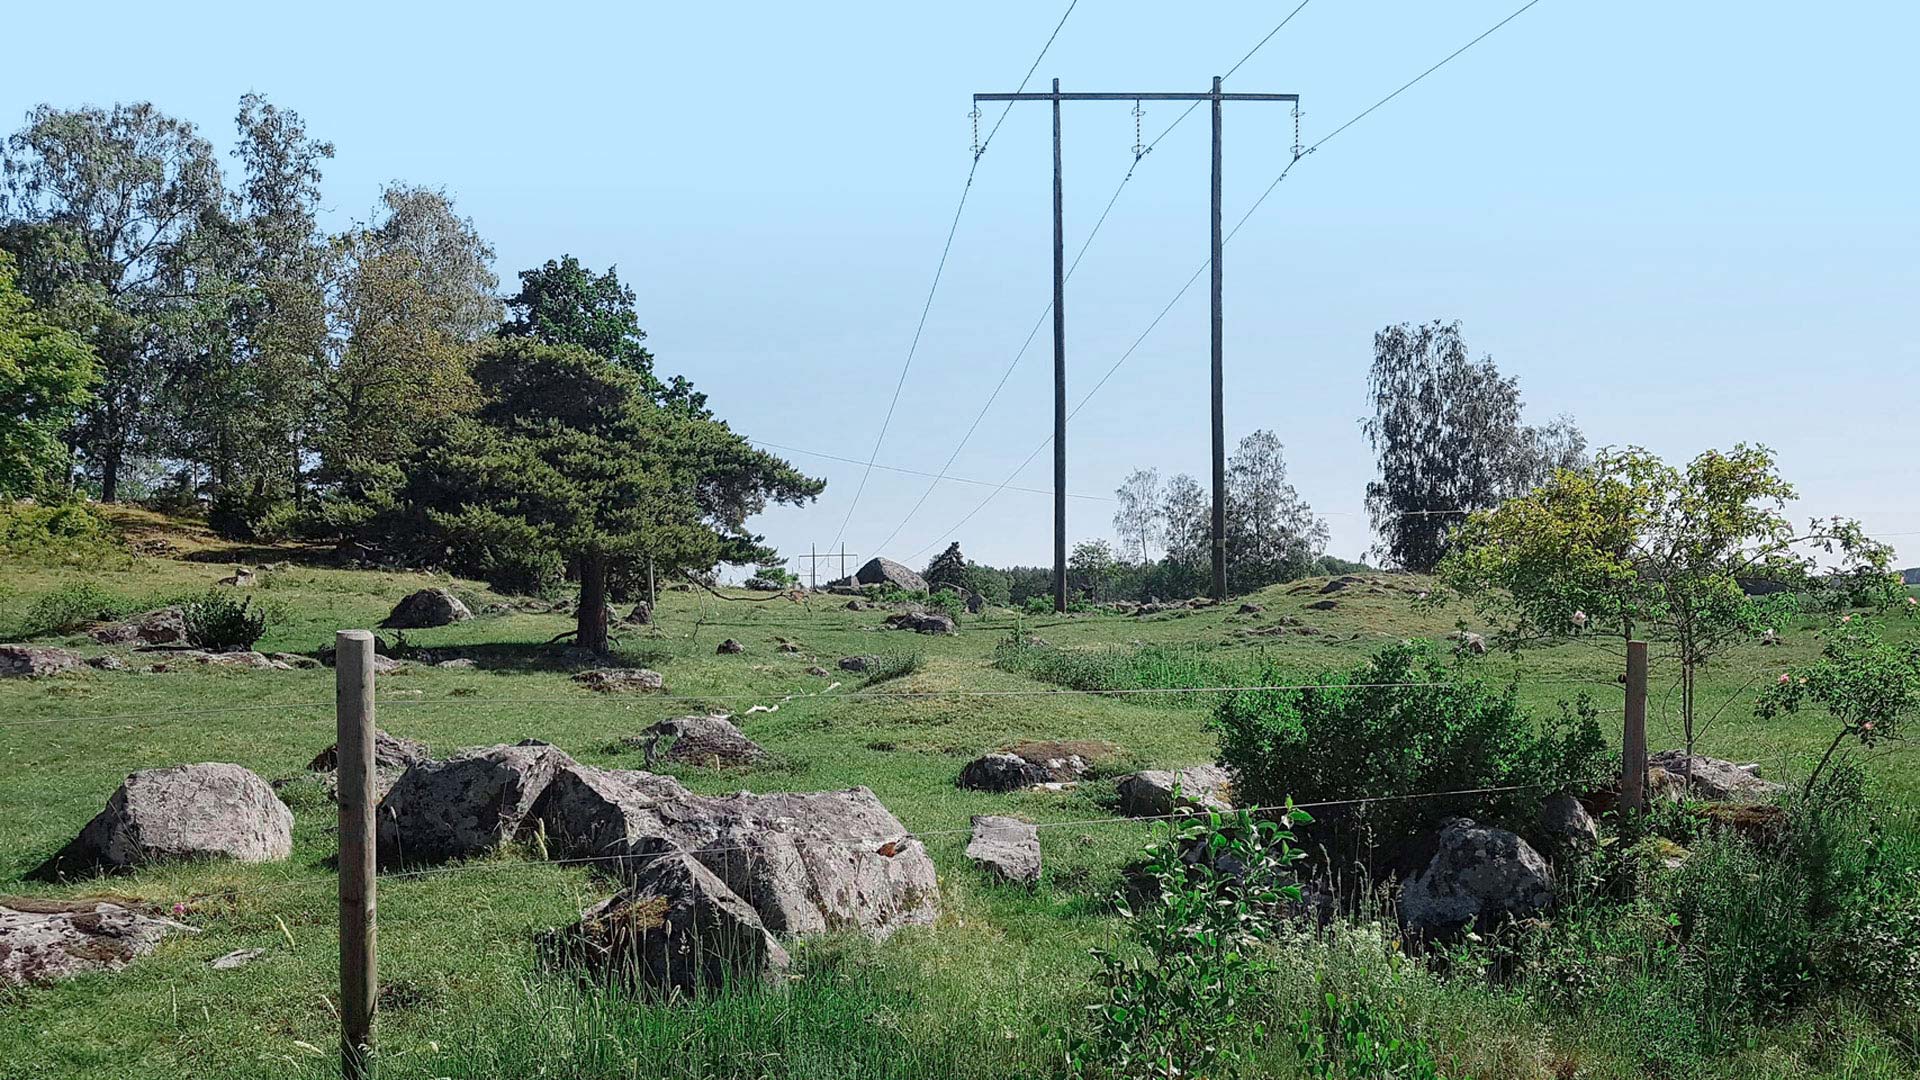 Power lines across a green field